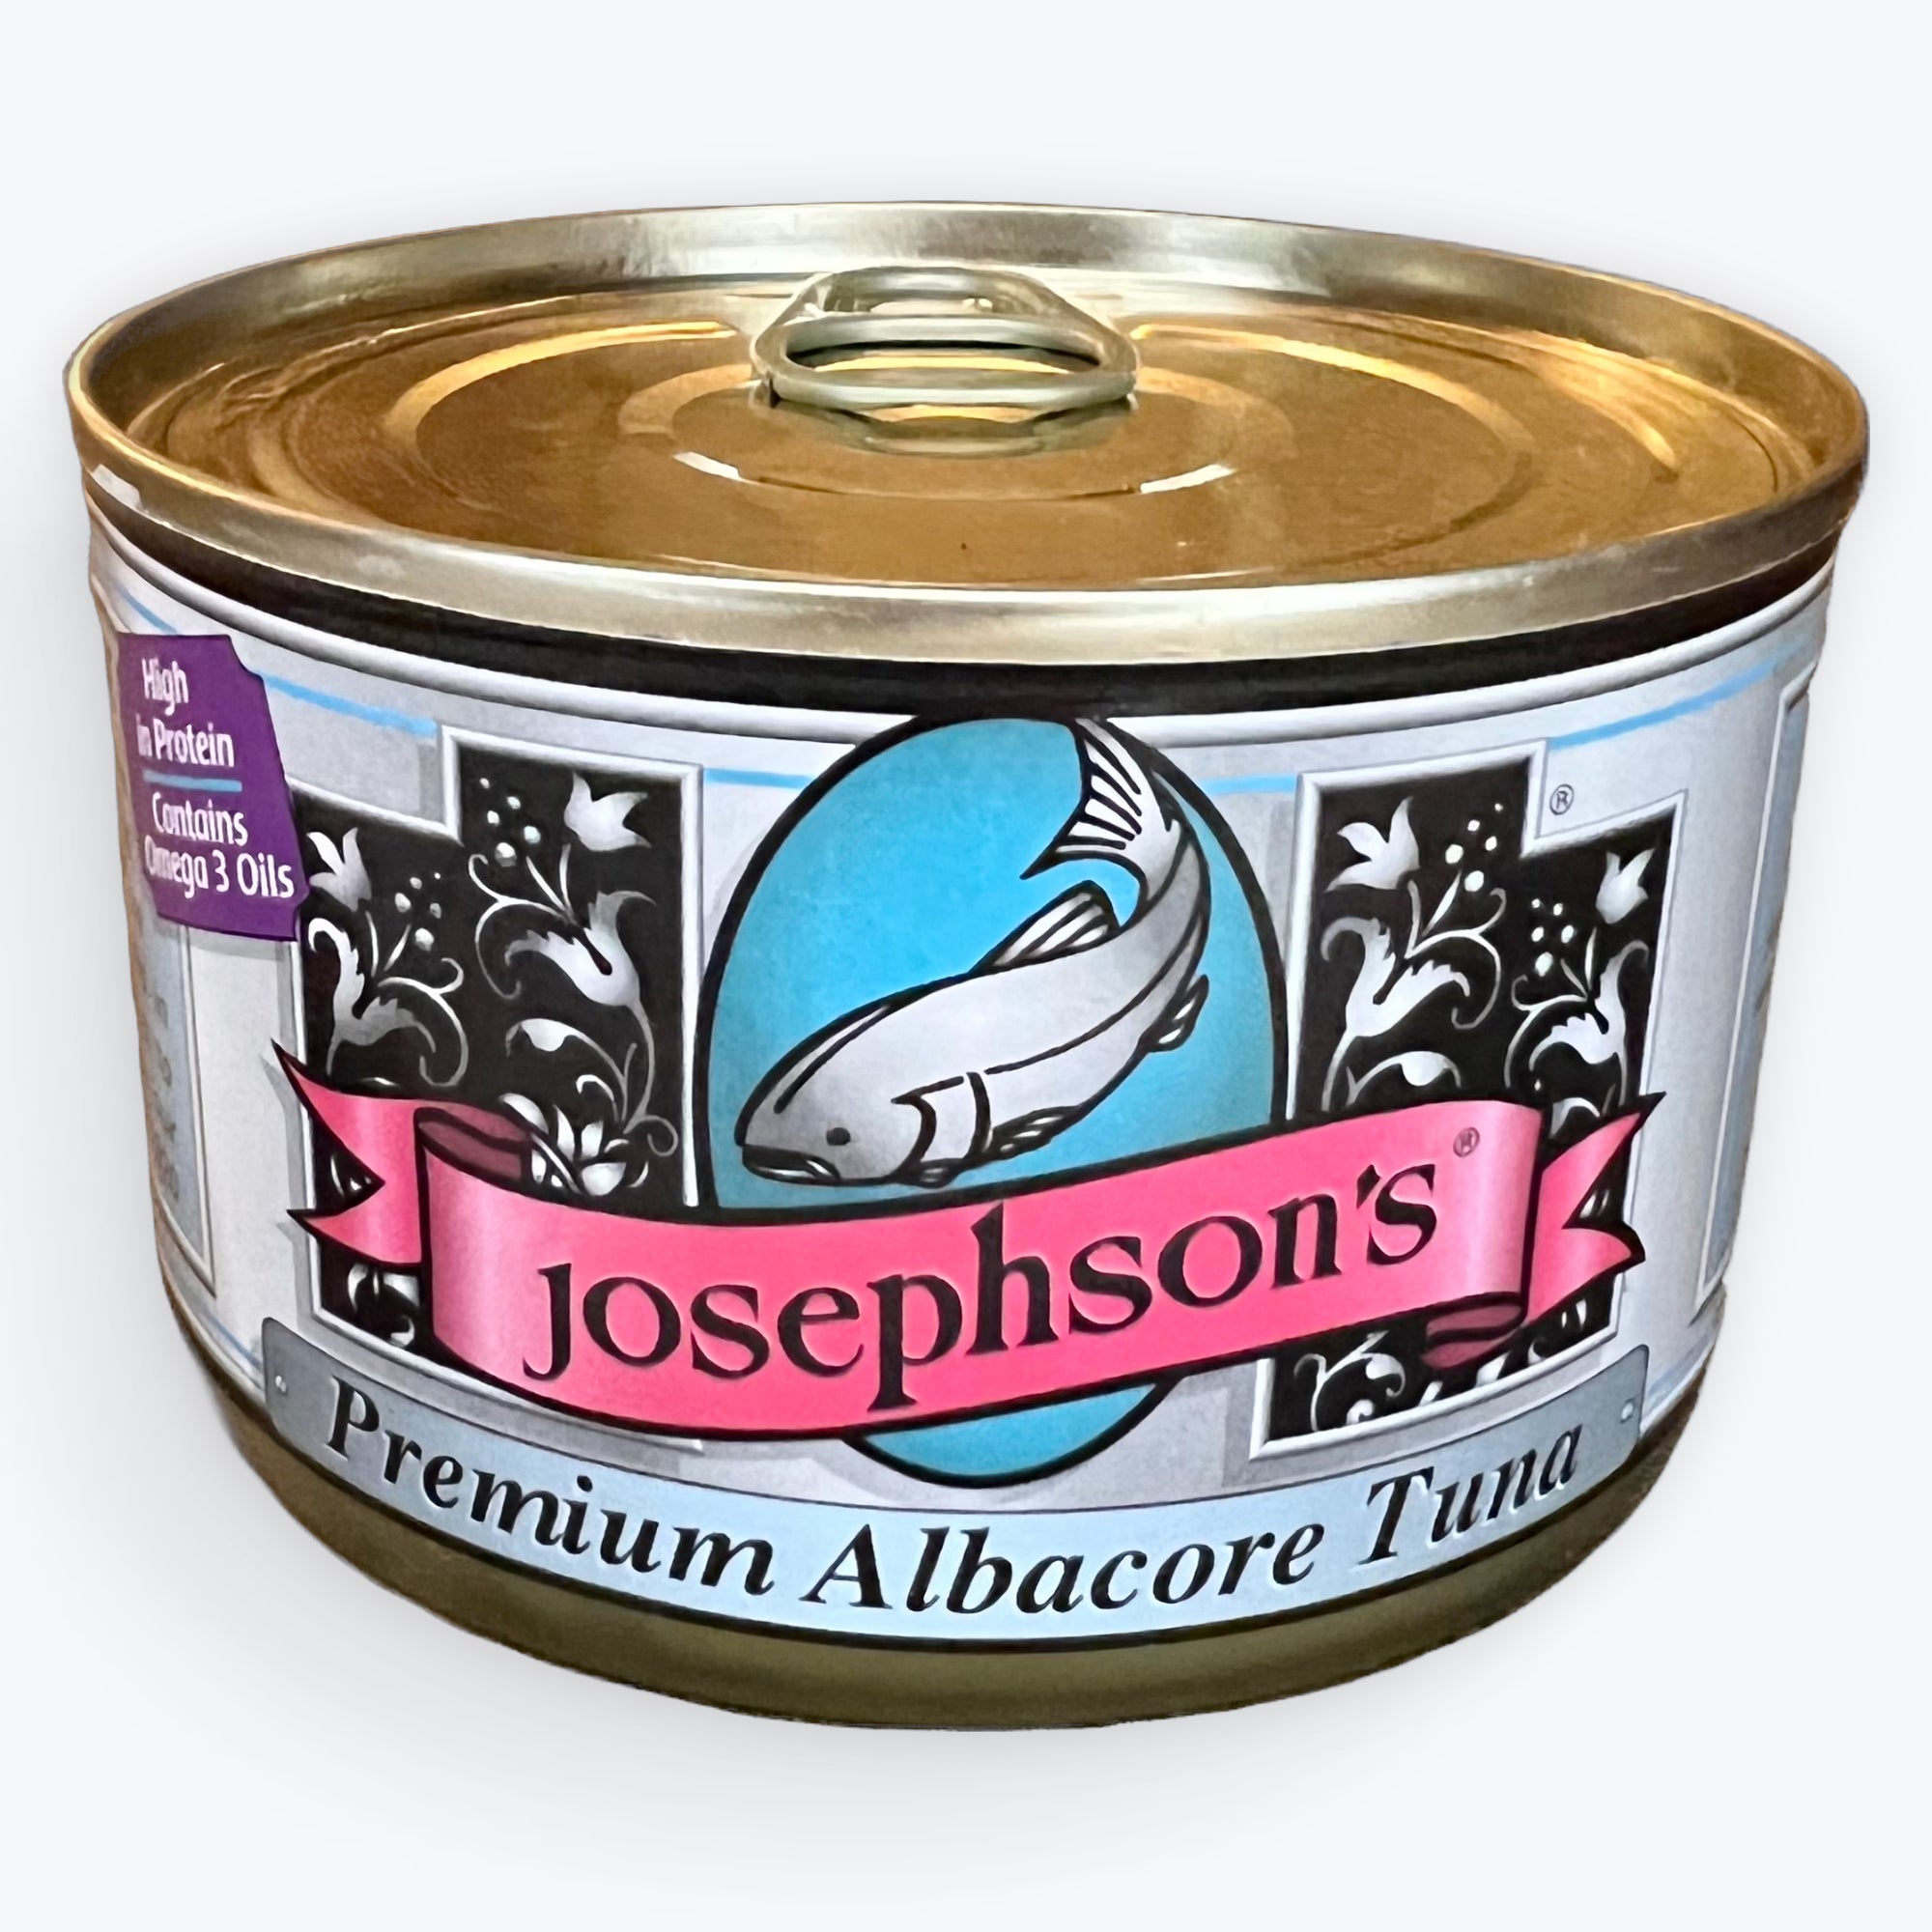 Premium Albacore Tuna 7.5 oz